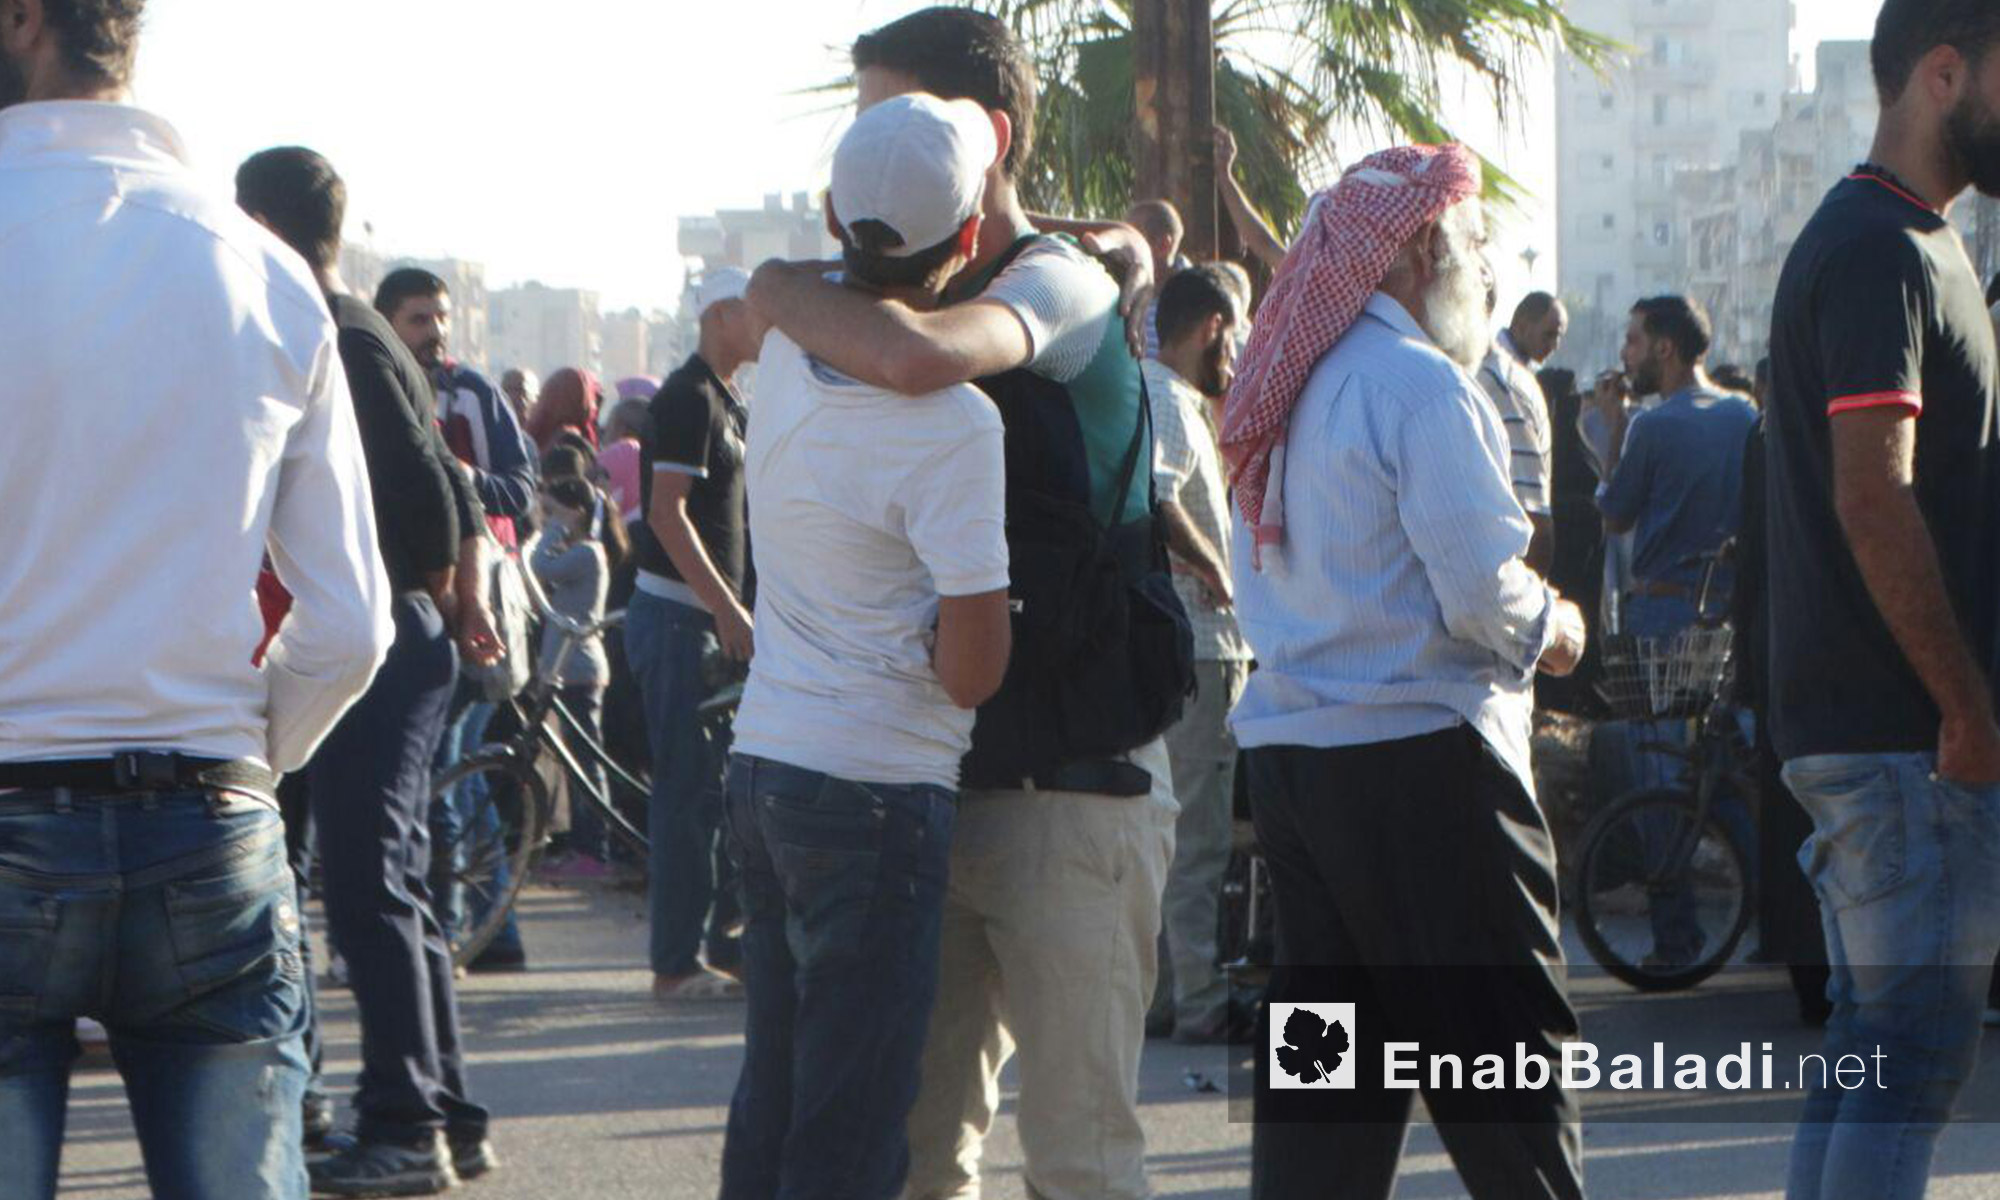 أهالي حي الوعر يودعون أقرباءهم قبل الخروج من الحي إلى ريف إدلب - الاثنين 19 أيلول (عنب بلدي)